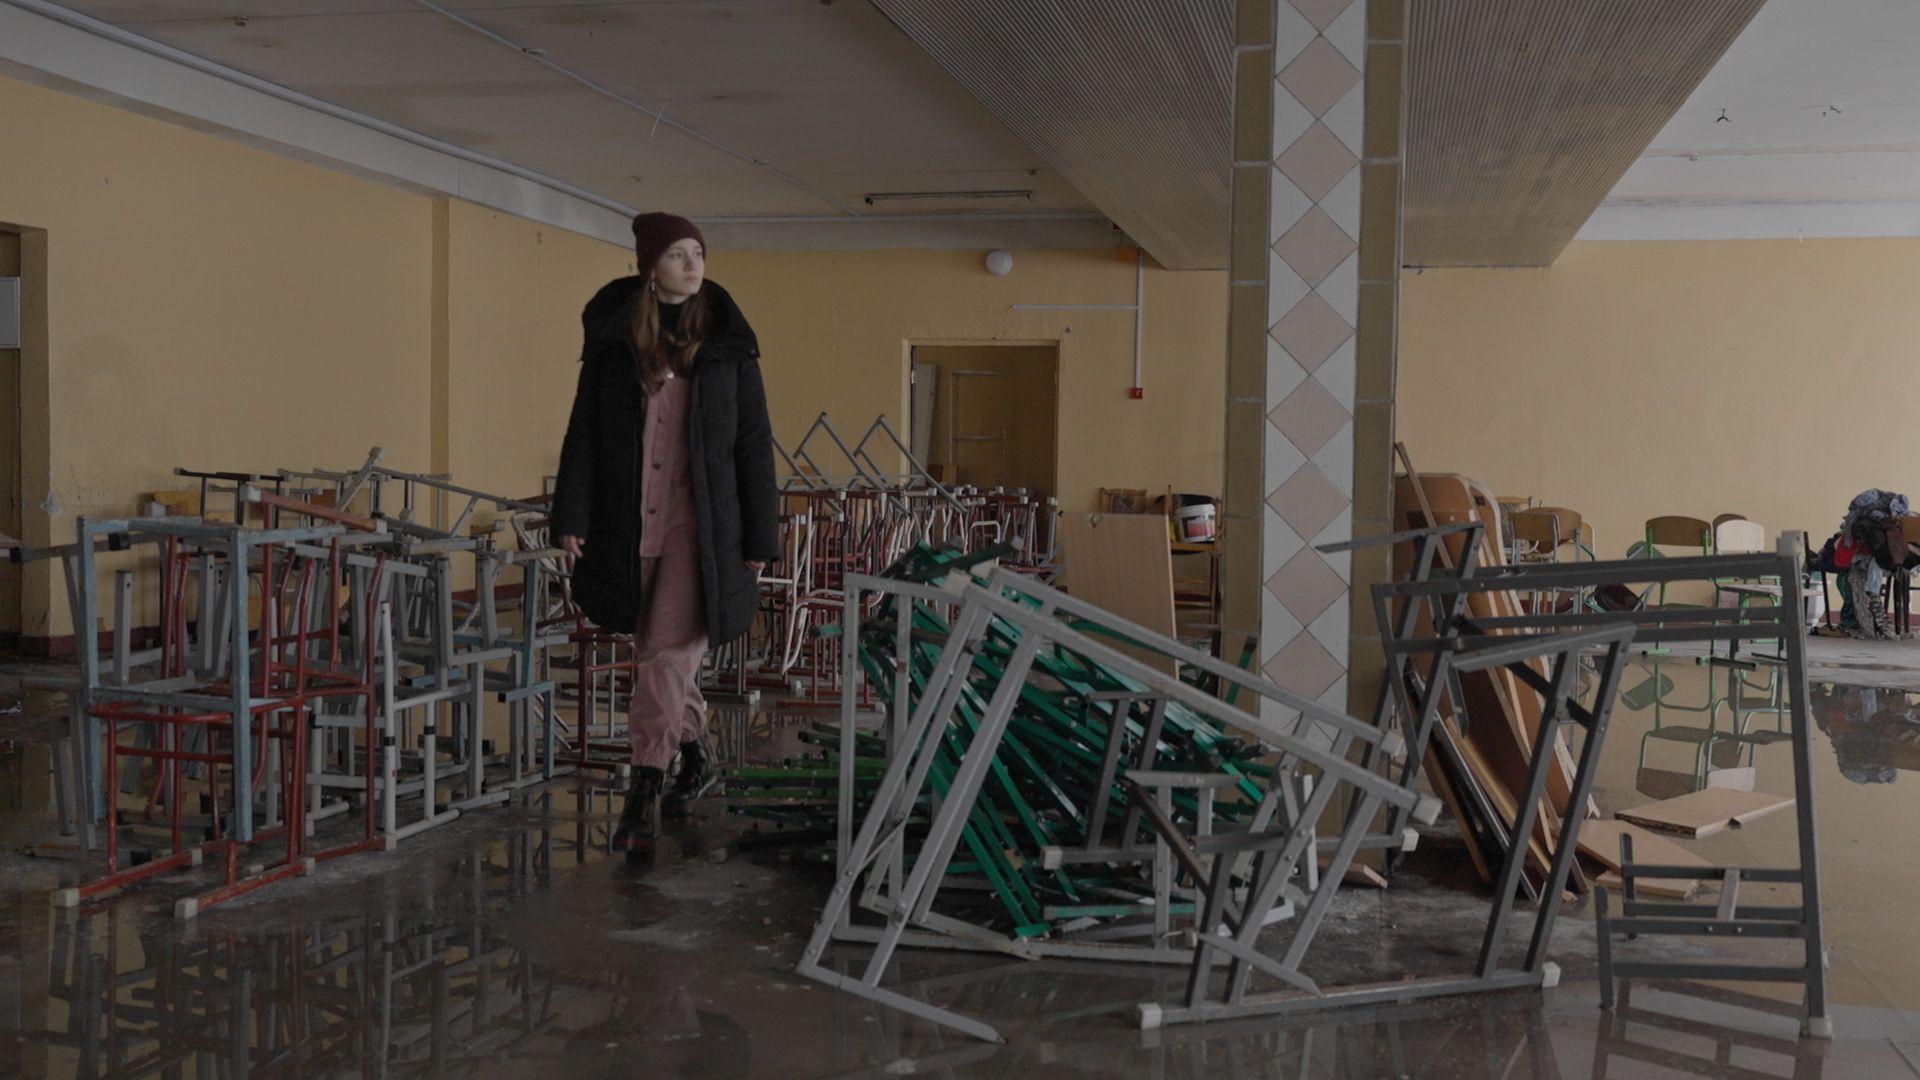 14-year-old Sonia walks through her damaged school in Irpin, Ukraine